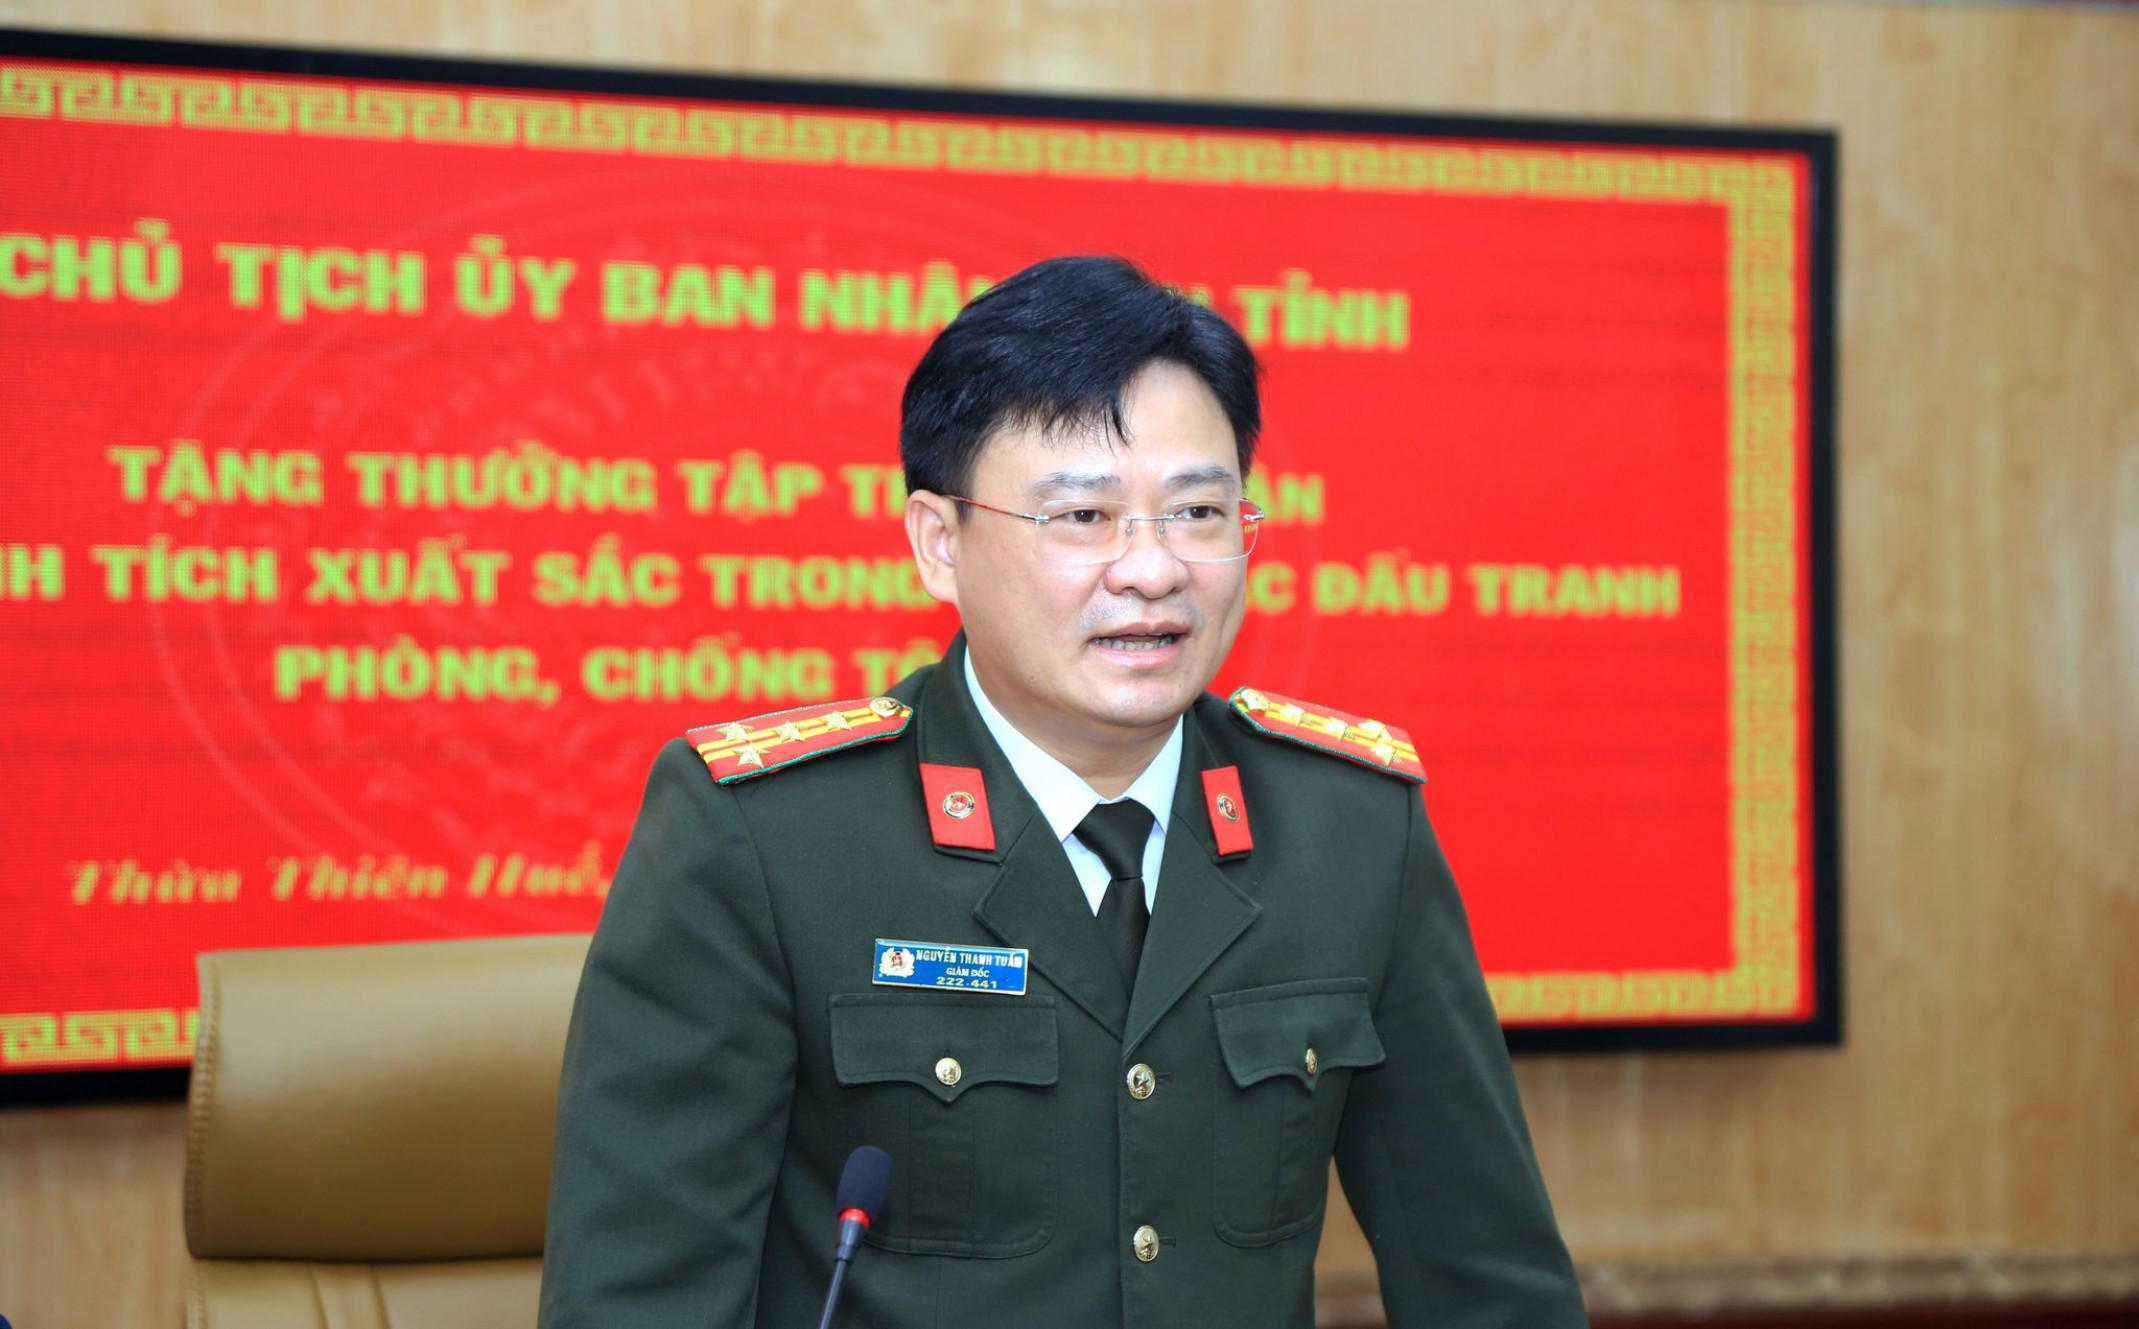 Đại tá Nguyễn Thanh Tuấn phát biểu tại buổi lễ.